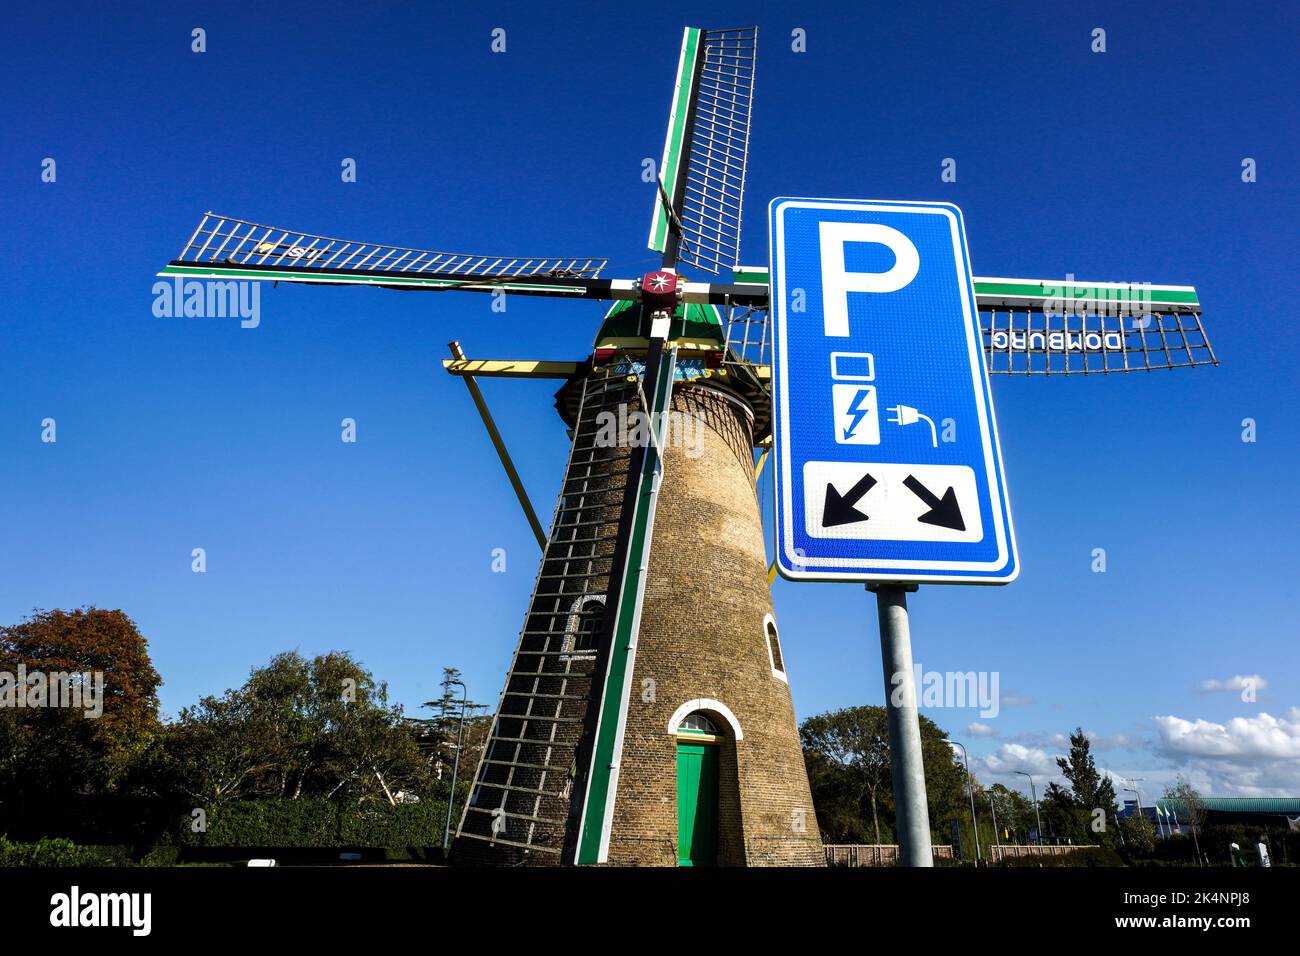 Electricidad a partir de la energía eólica: Aparcamiento con punto de carga para vehículos eléctricos frente al histórico molino de viento de 1817 en Domburg, Países Bajos Foto de stock